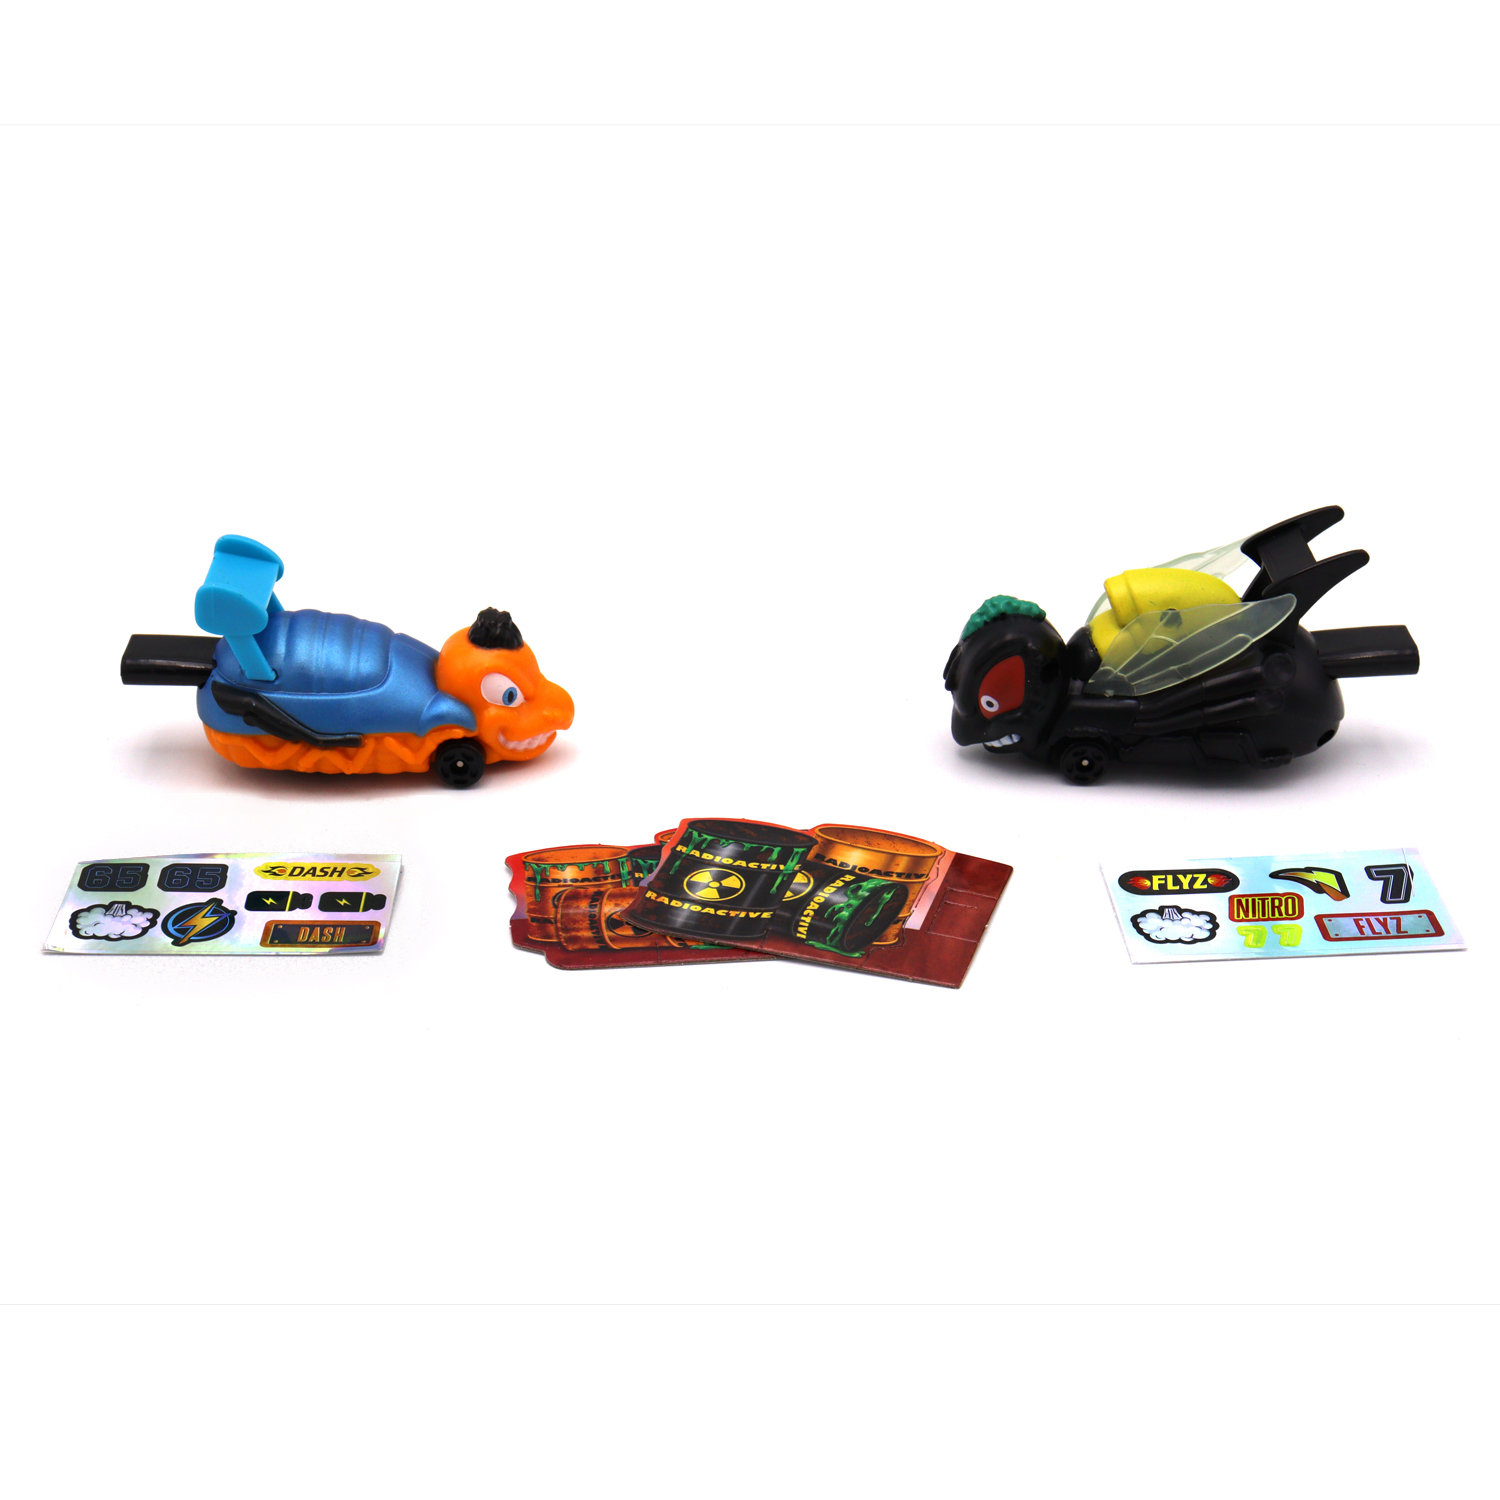 Игровой набор Bugs Racings гонка жуков с 2 машинками черная муха и оранжевая оса K02BR006-3 - фото 1